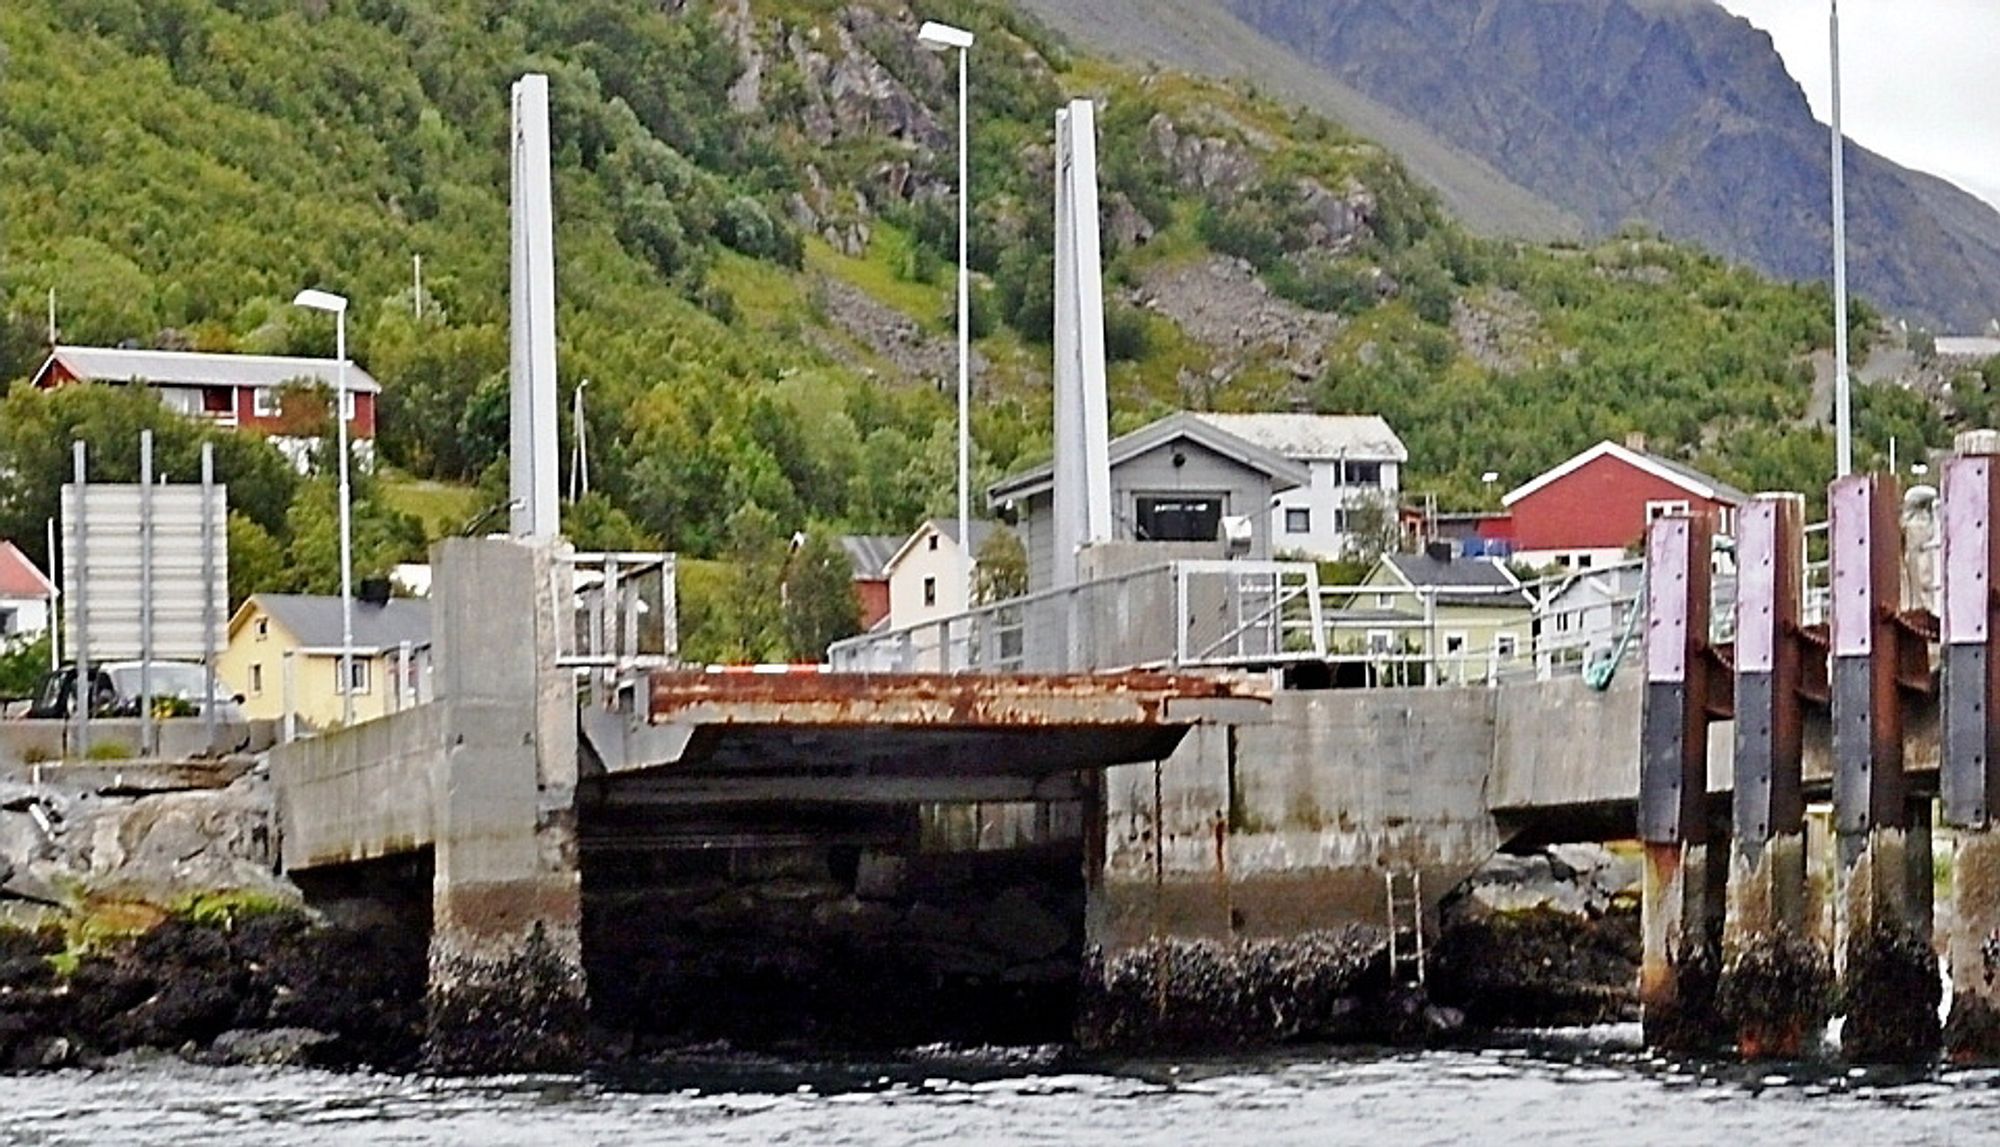 Som bilder viser har fergekaia i Bergsfjord i Loppa et sterkt behov for oppgradering. Seks entreprenører har meldt sin interesse for å levere stålkonstruksjoner til oppgraderingen. (Foto: Statens vegvesen)